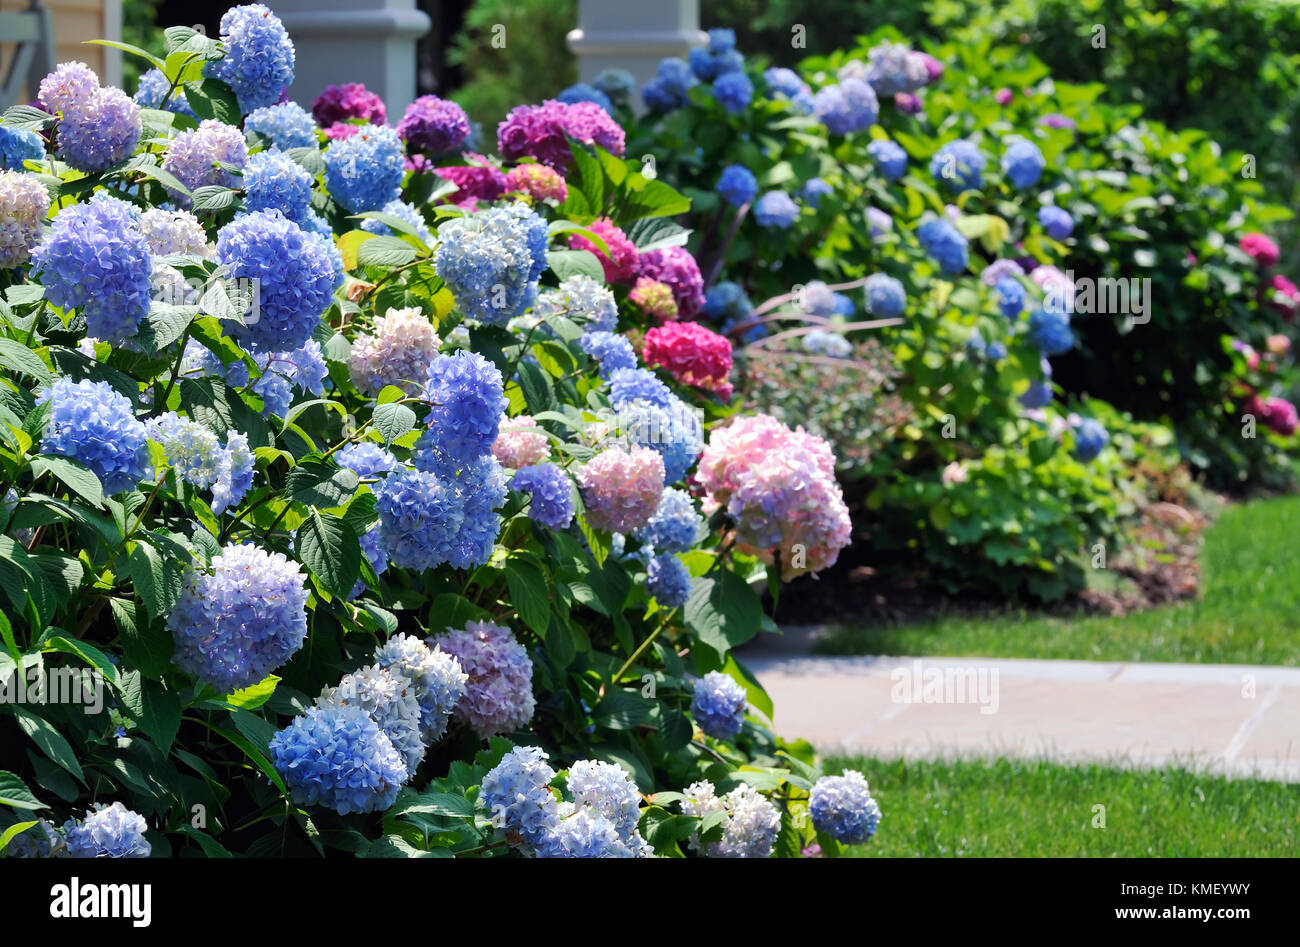 Colorato ortensie elaborazione ingresso di casa. massa piantagione di blu, rosa chiaro e scuro fiori viola in giardino ornamentale. Foto Stock